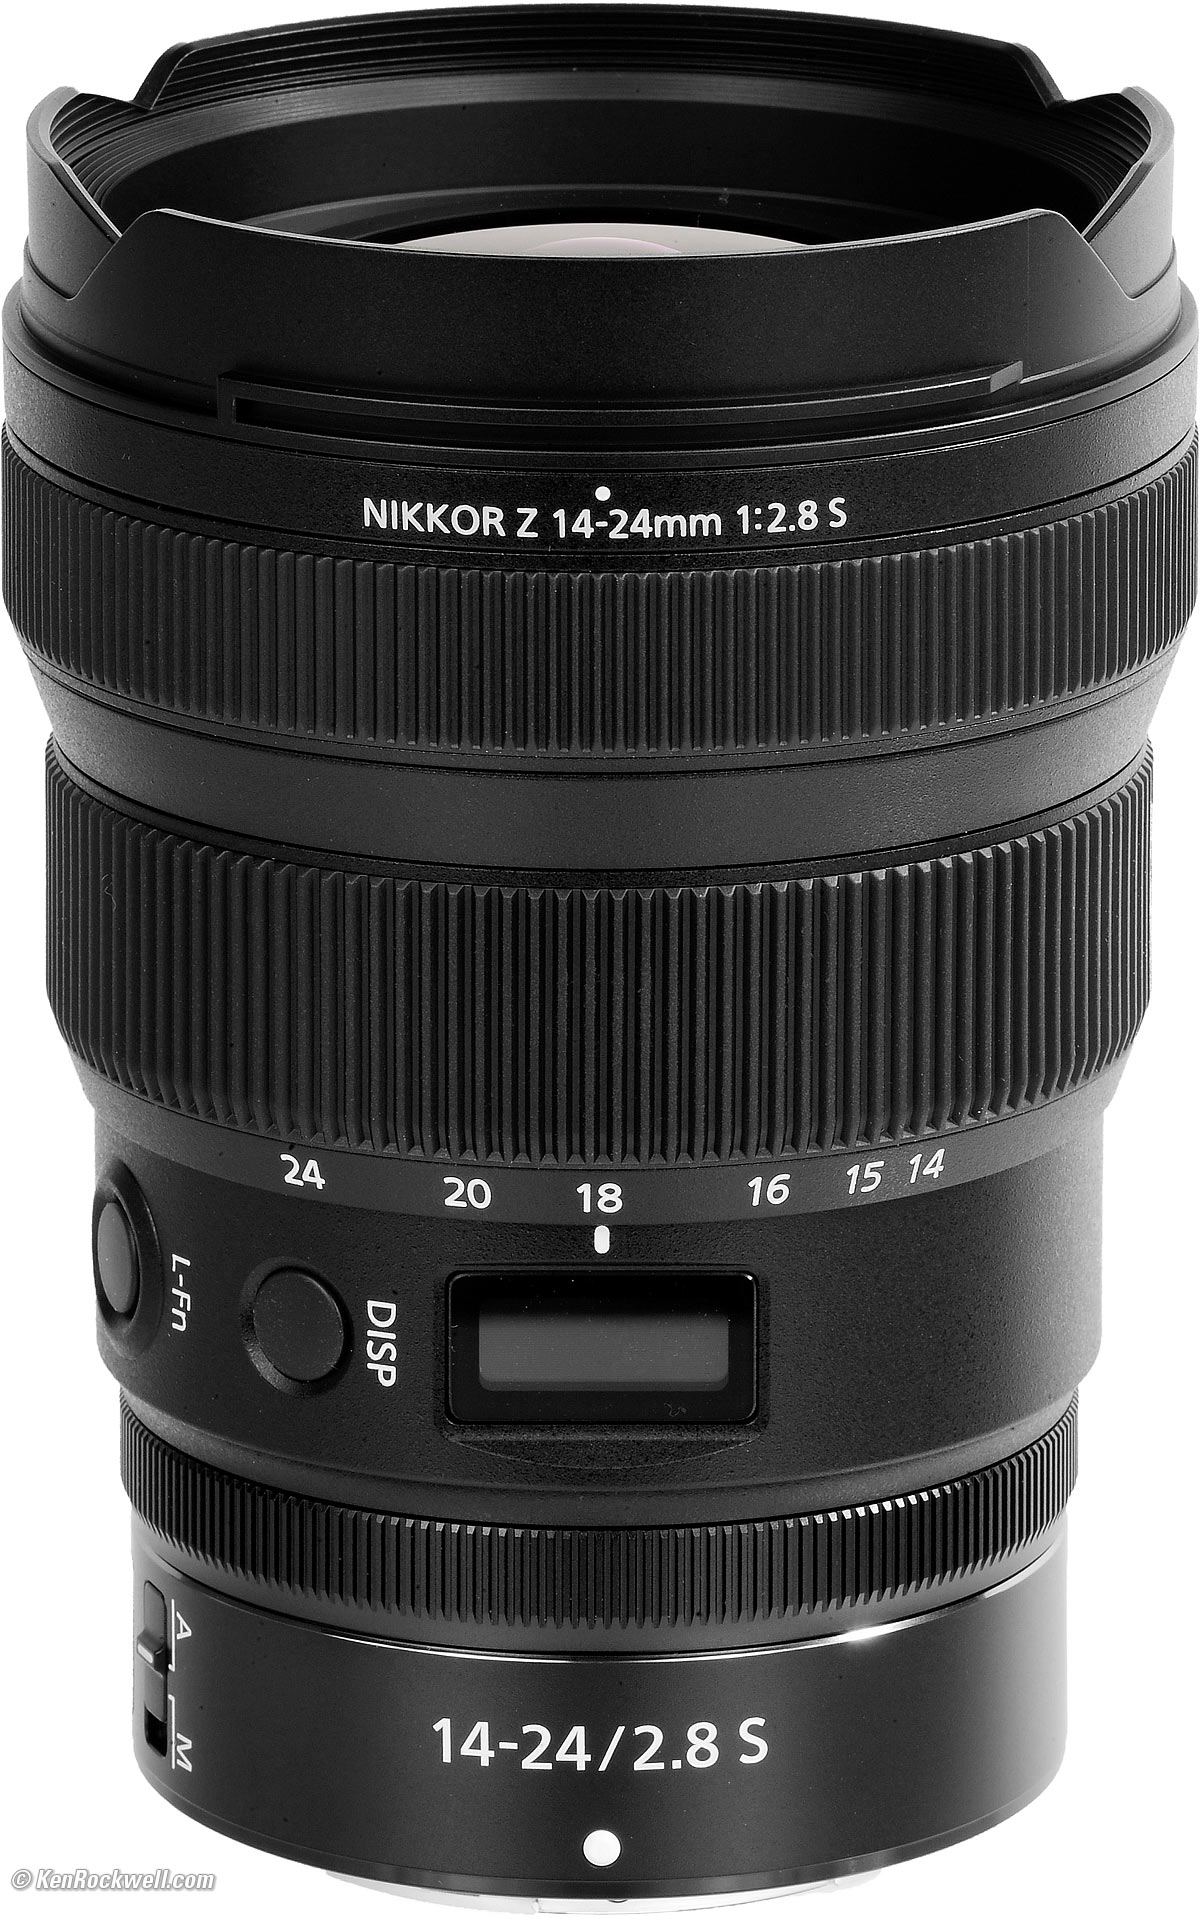 Nikon Z 14-24mm f/2.8 Review